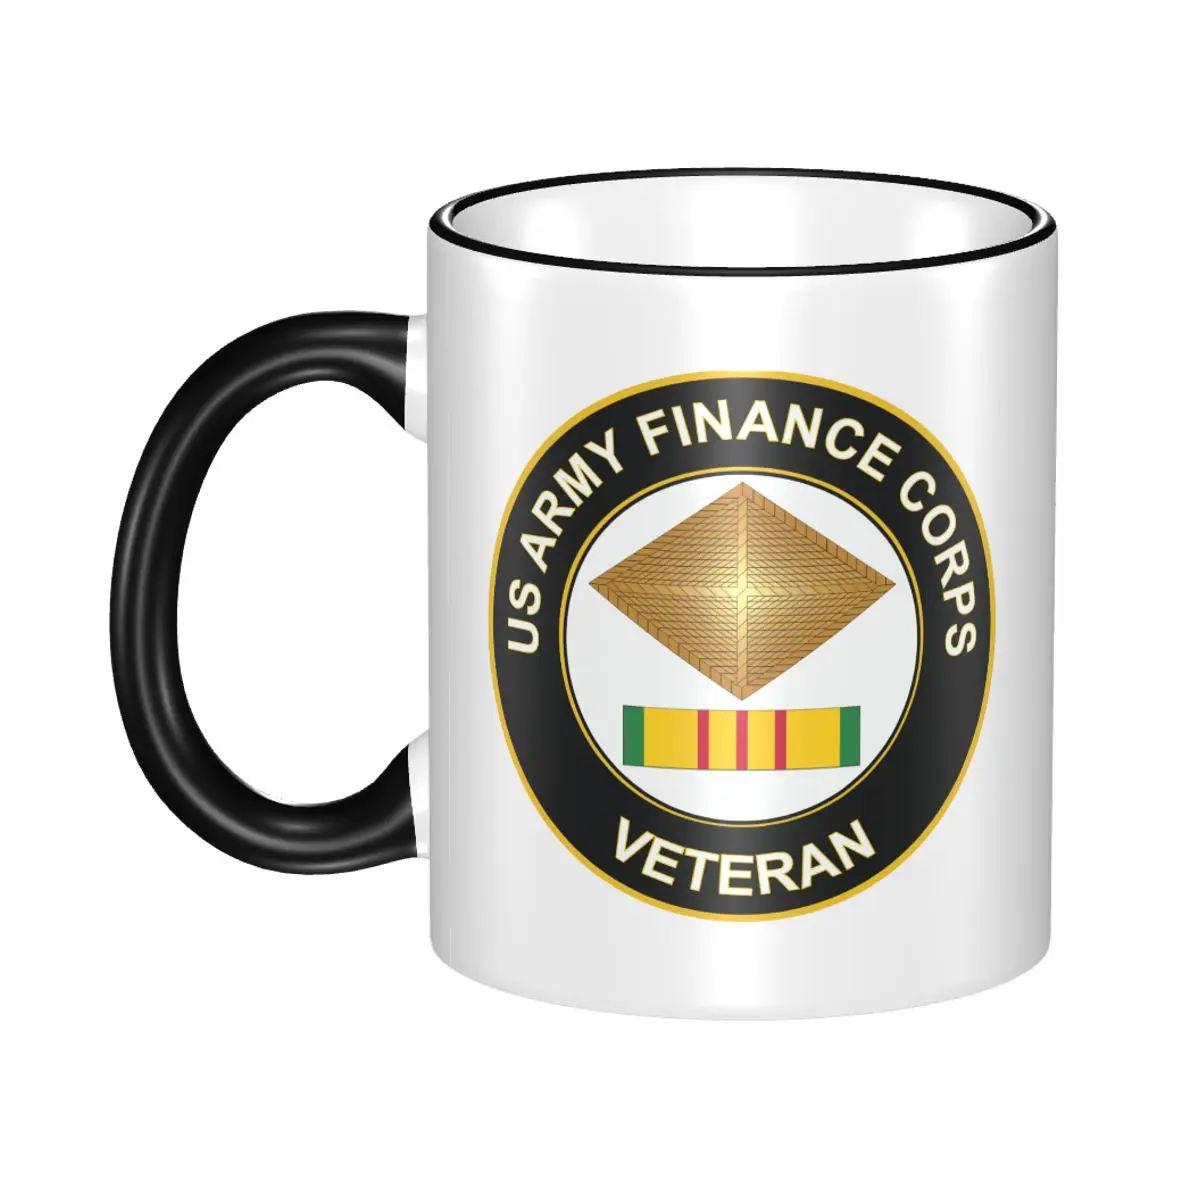 

Армия корпус финансы Вьетнам Ветеран наклейка пивная чашка фарфоровая кофейная кружка чайная чашка 11 унций керамические кружки